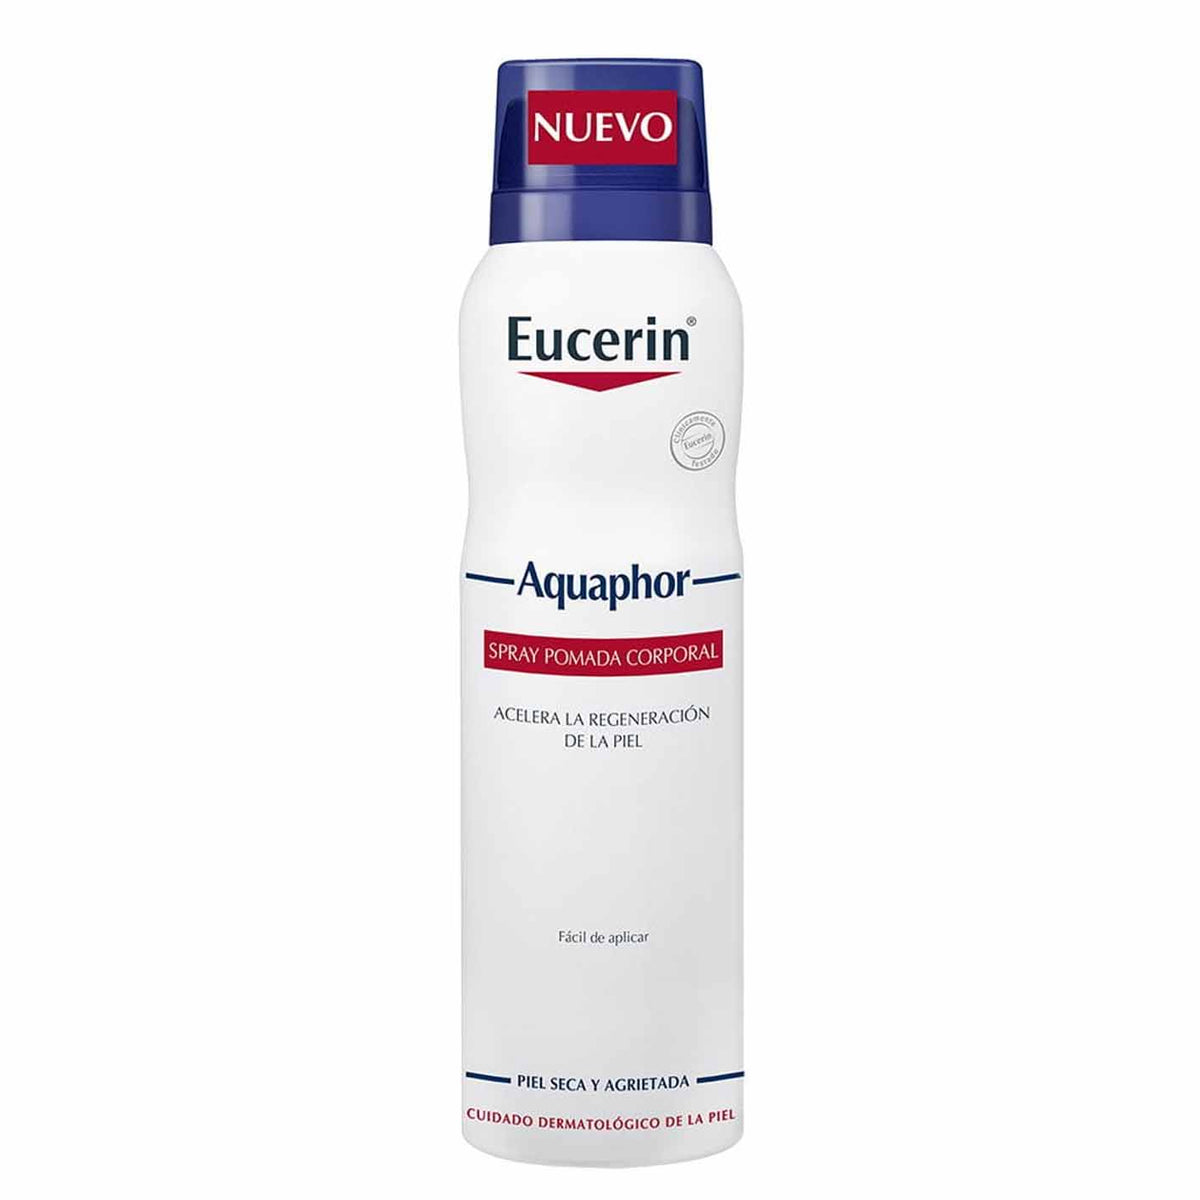 Eucerin Aquaphor Spray